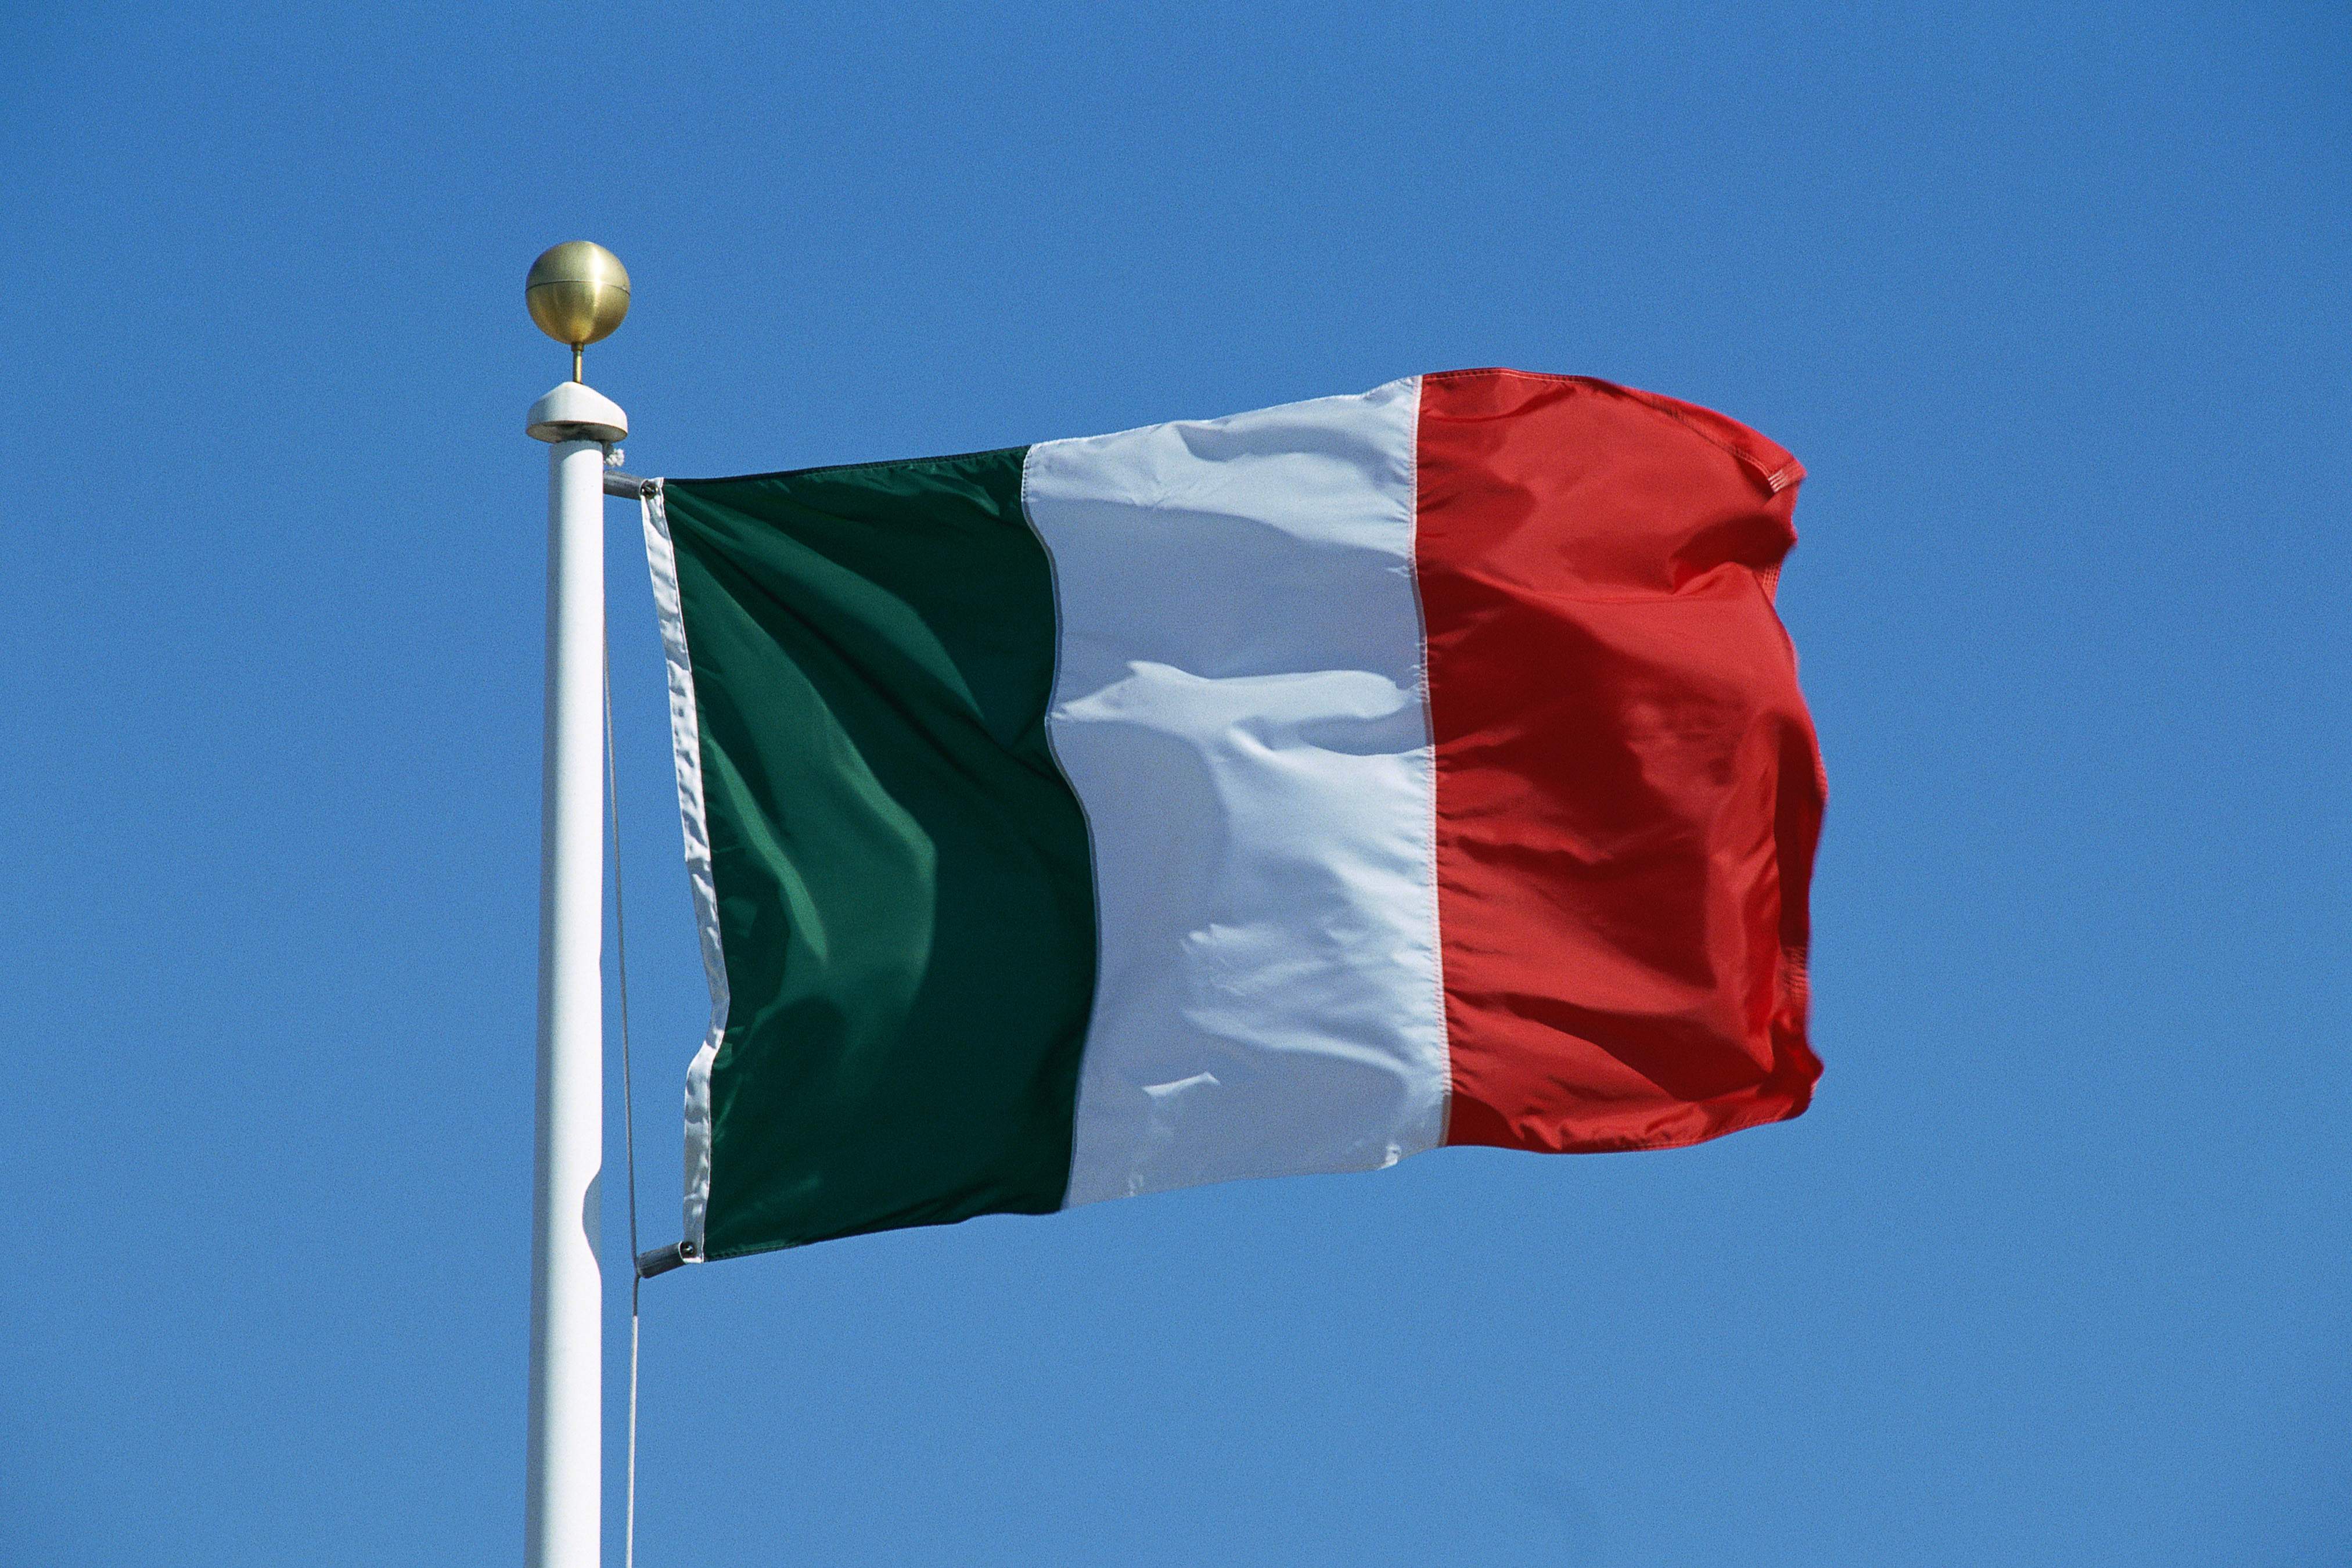 La bandiera italiana celebrata nella festa del tricolore (B1- B2)